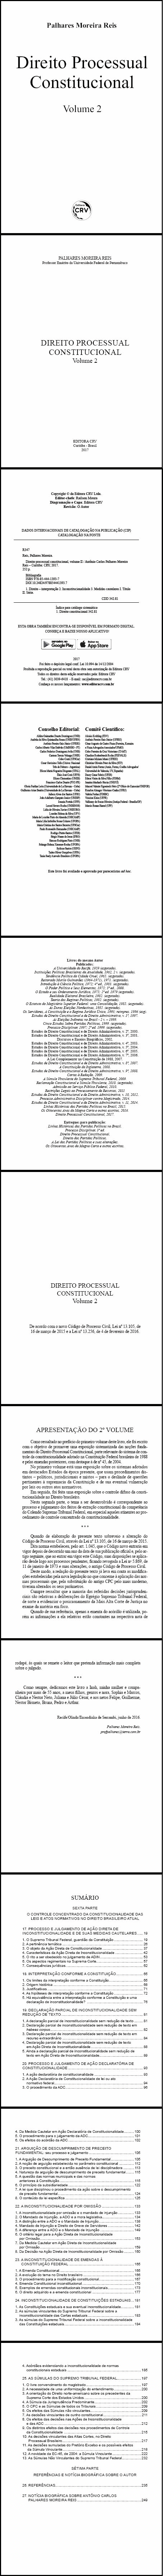 DIREITO PROCESSUAL CONSTITUCIONAL, VOLUME II